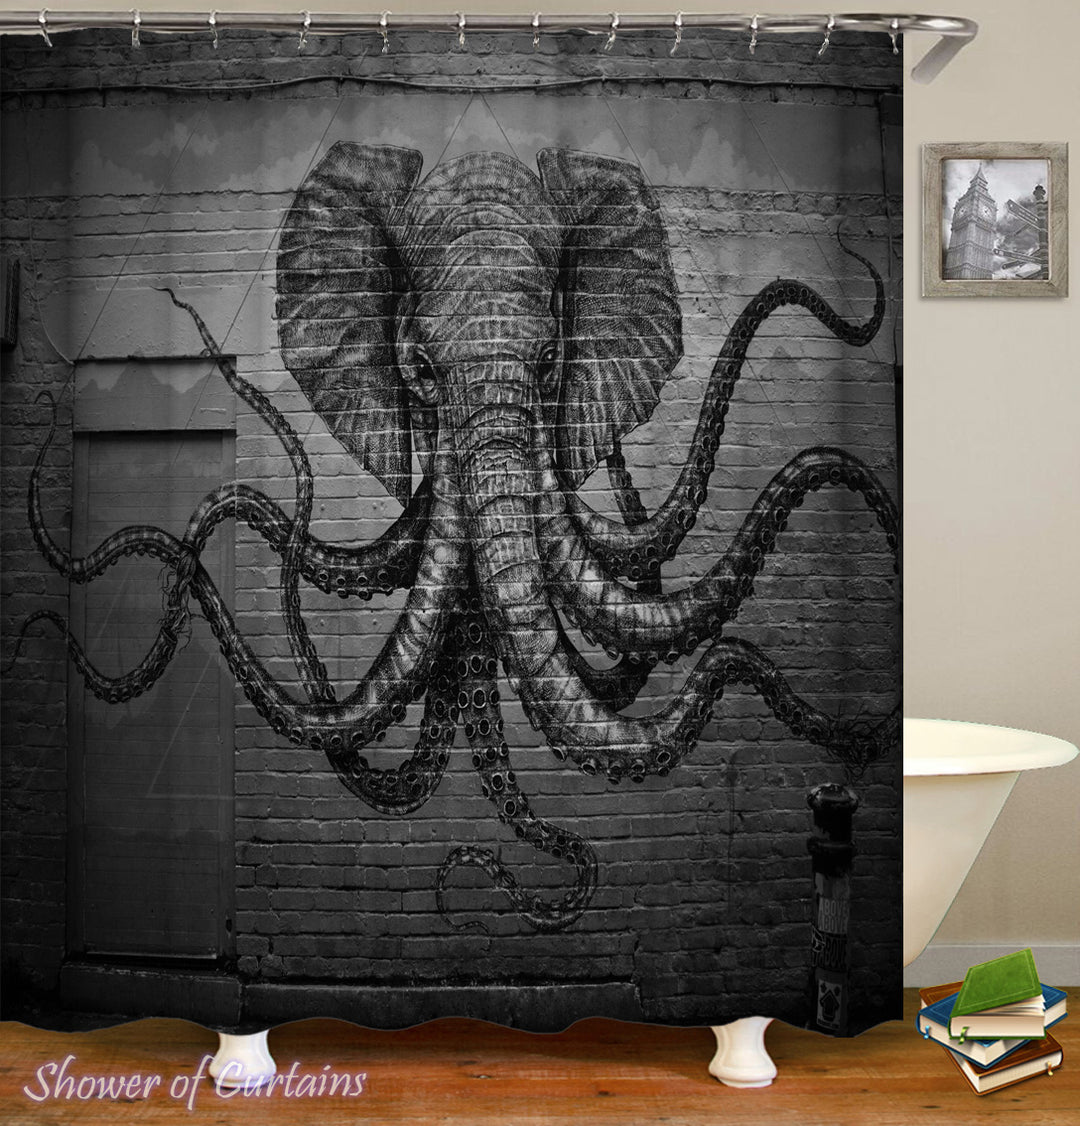 Kraken Shower Curtain - Elephant Octopus Monster